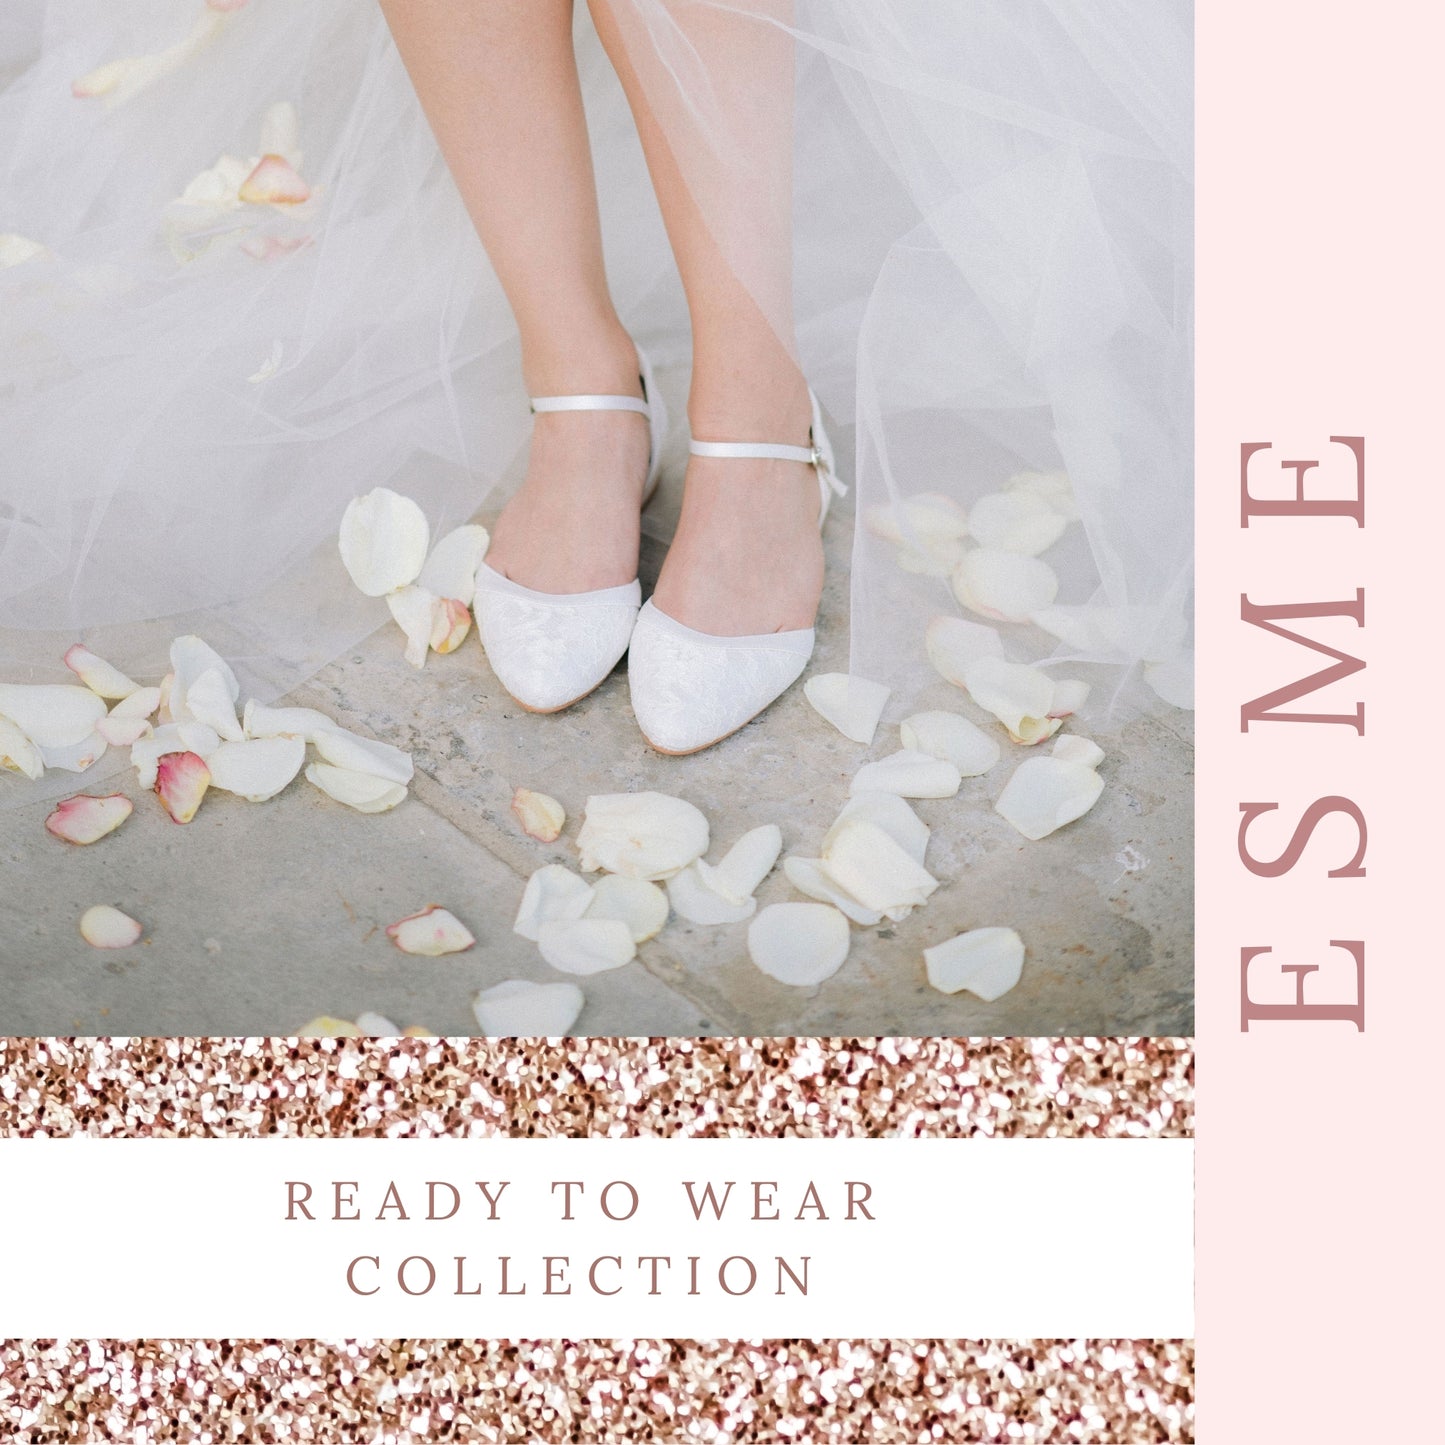 wedding-short-heels-for-bride